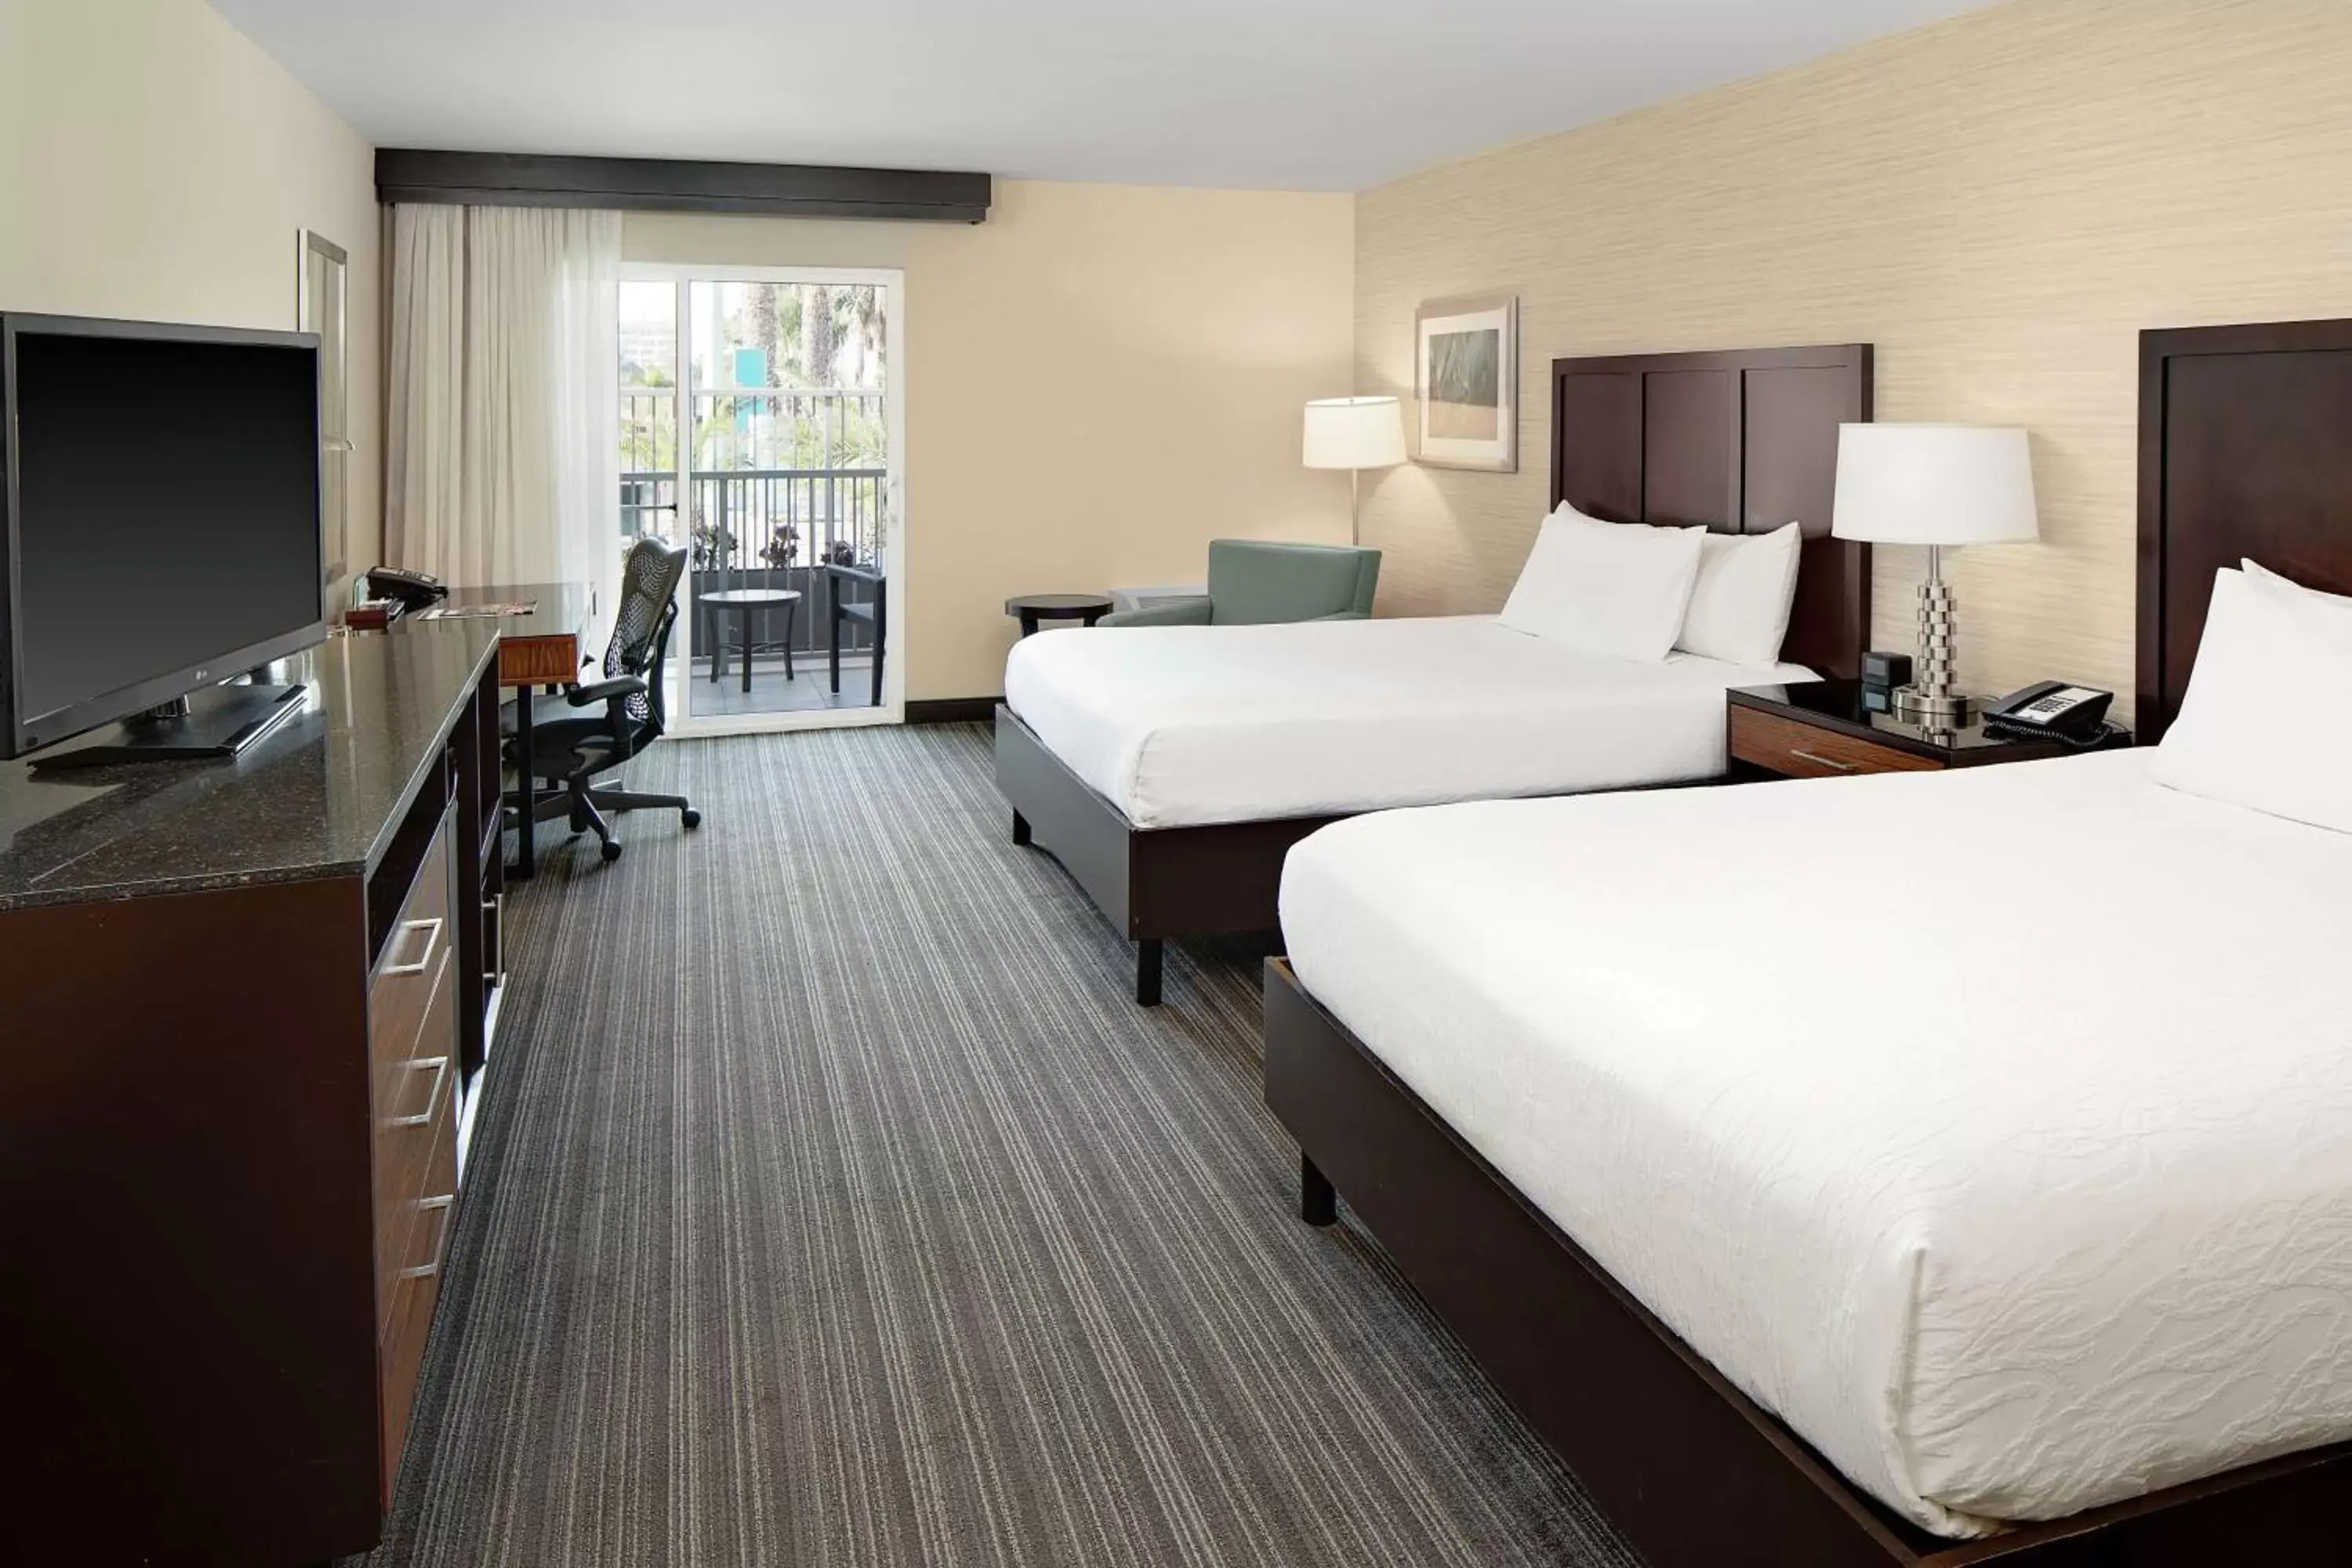 Queen Room with Two Queen Beds in Hilton Garden Inn Los Angeles Marina Del Rey